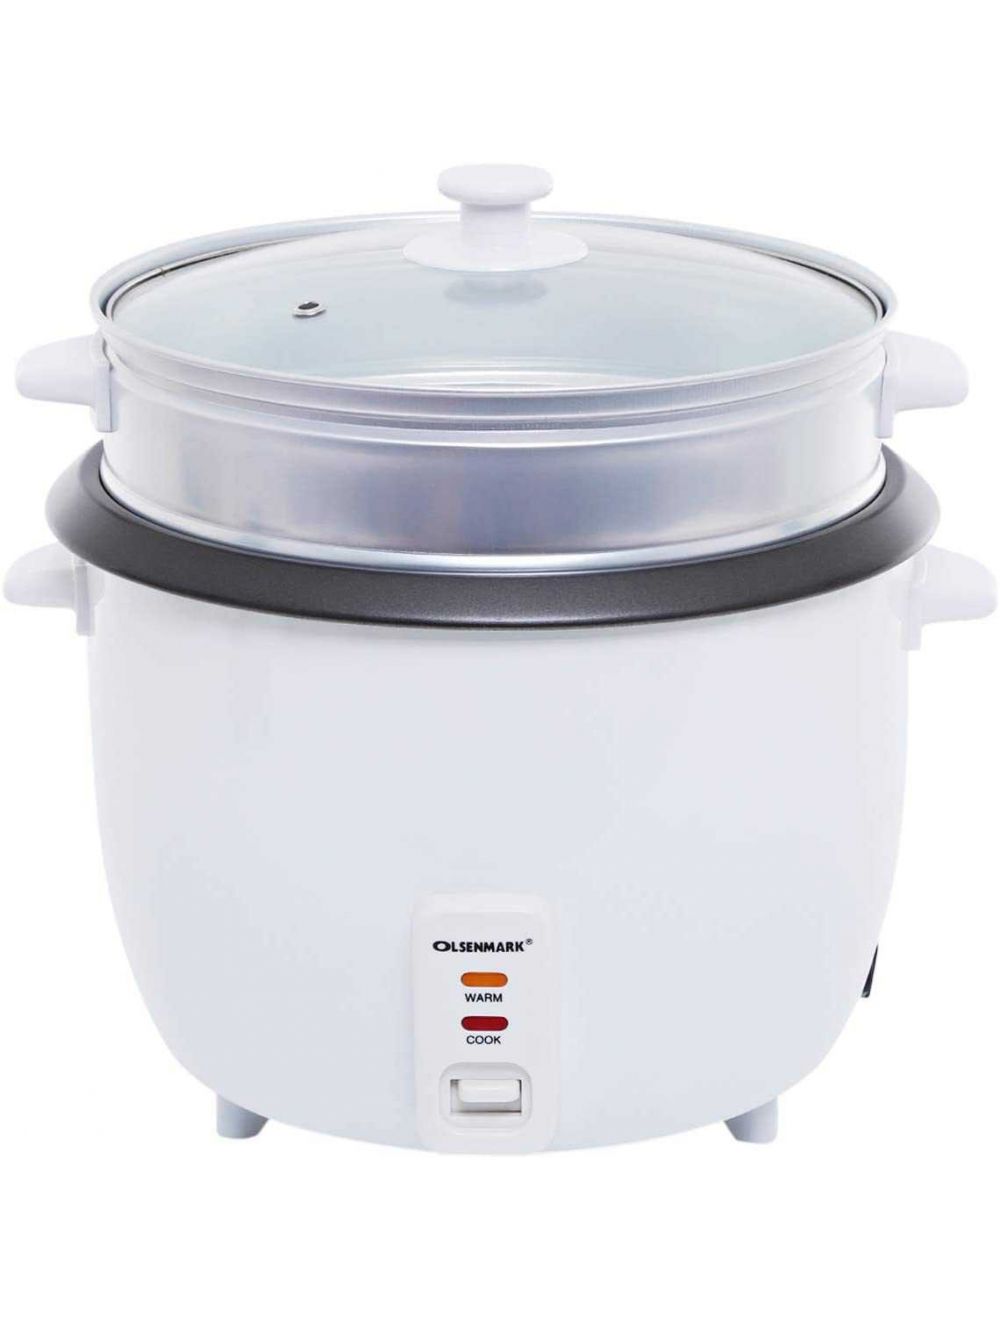 Olsenmark 3 In 1 Automatc Rice Cooker/Steamer-OMRC2183